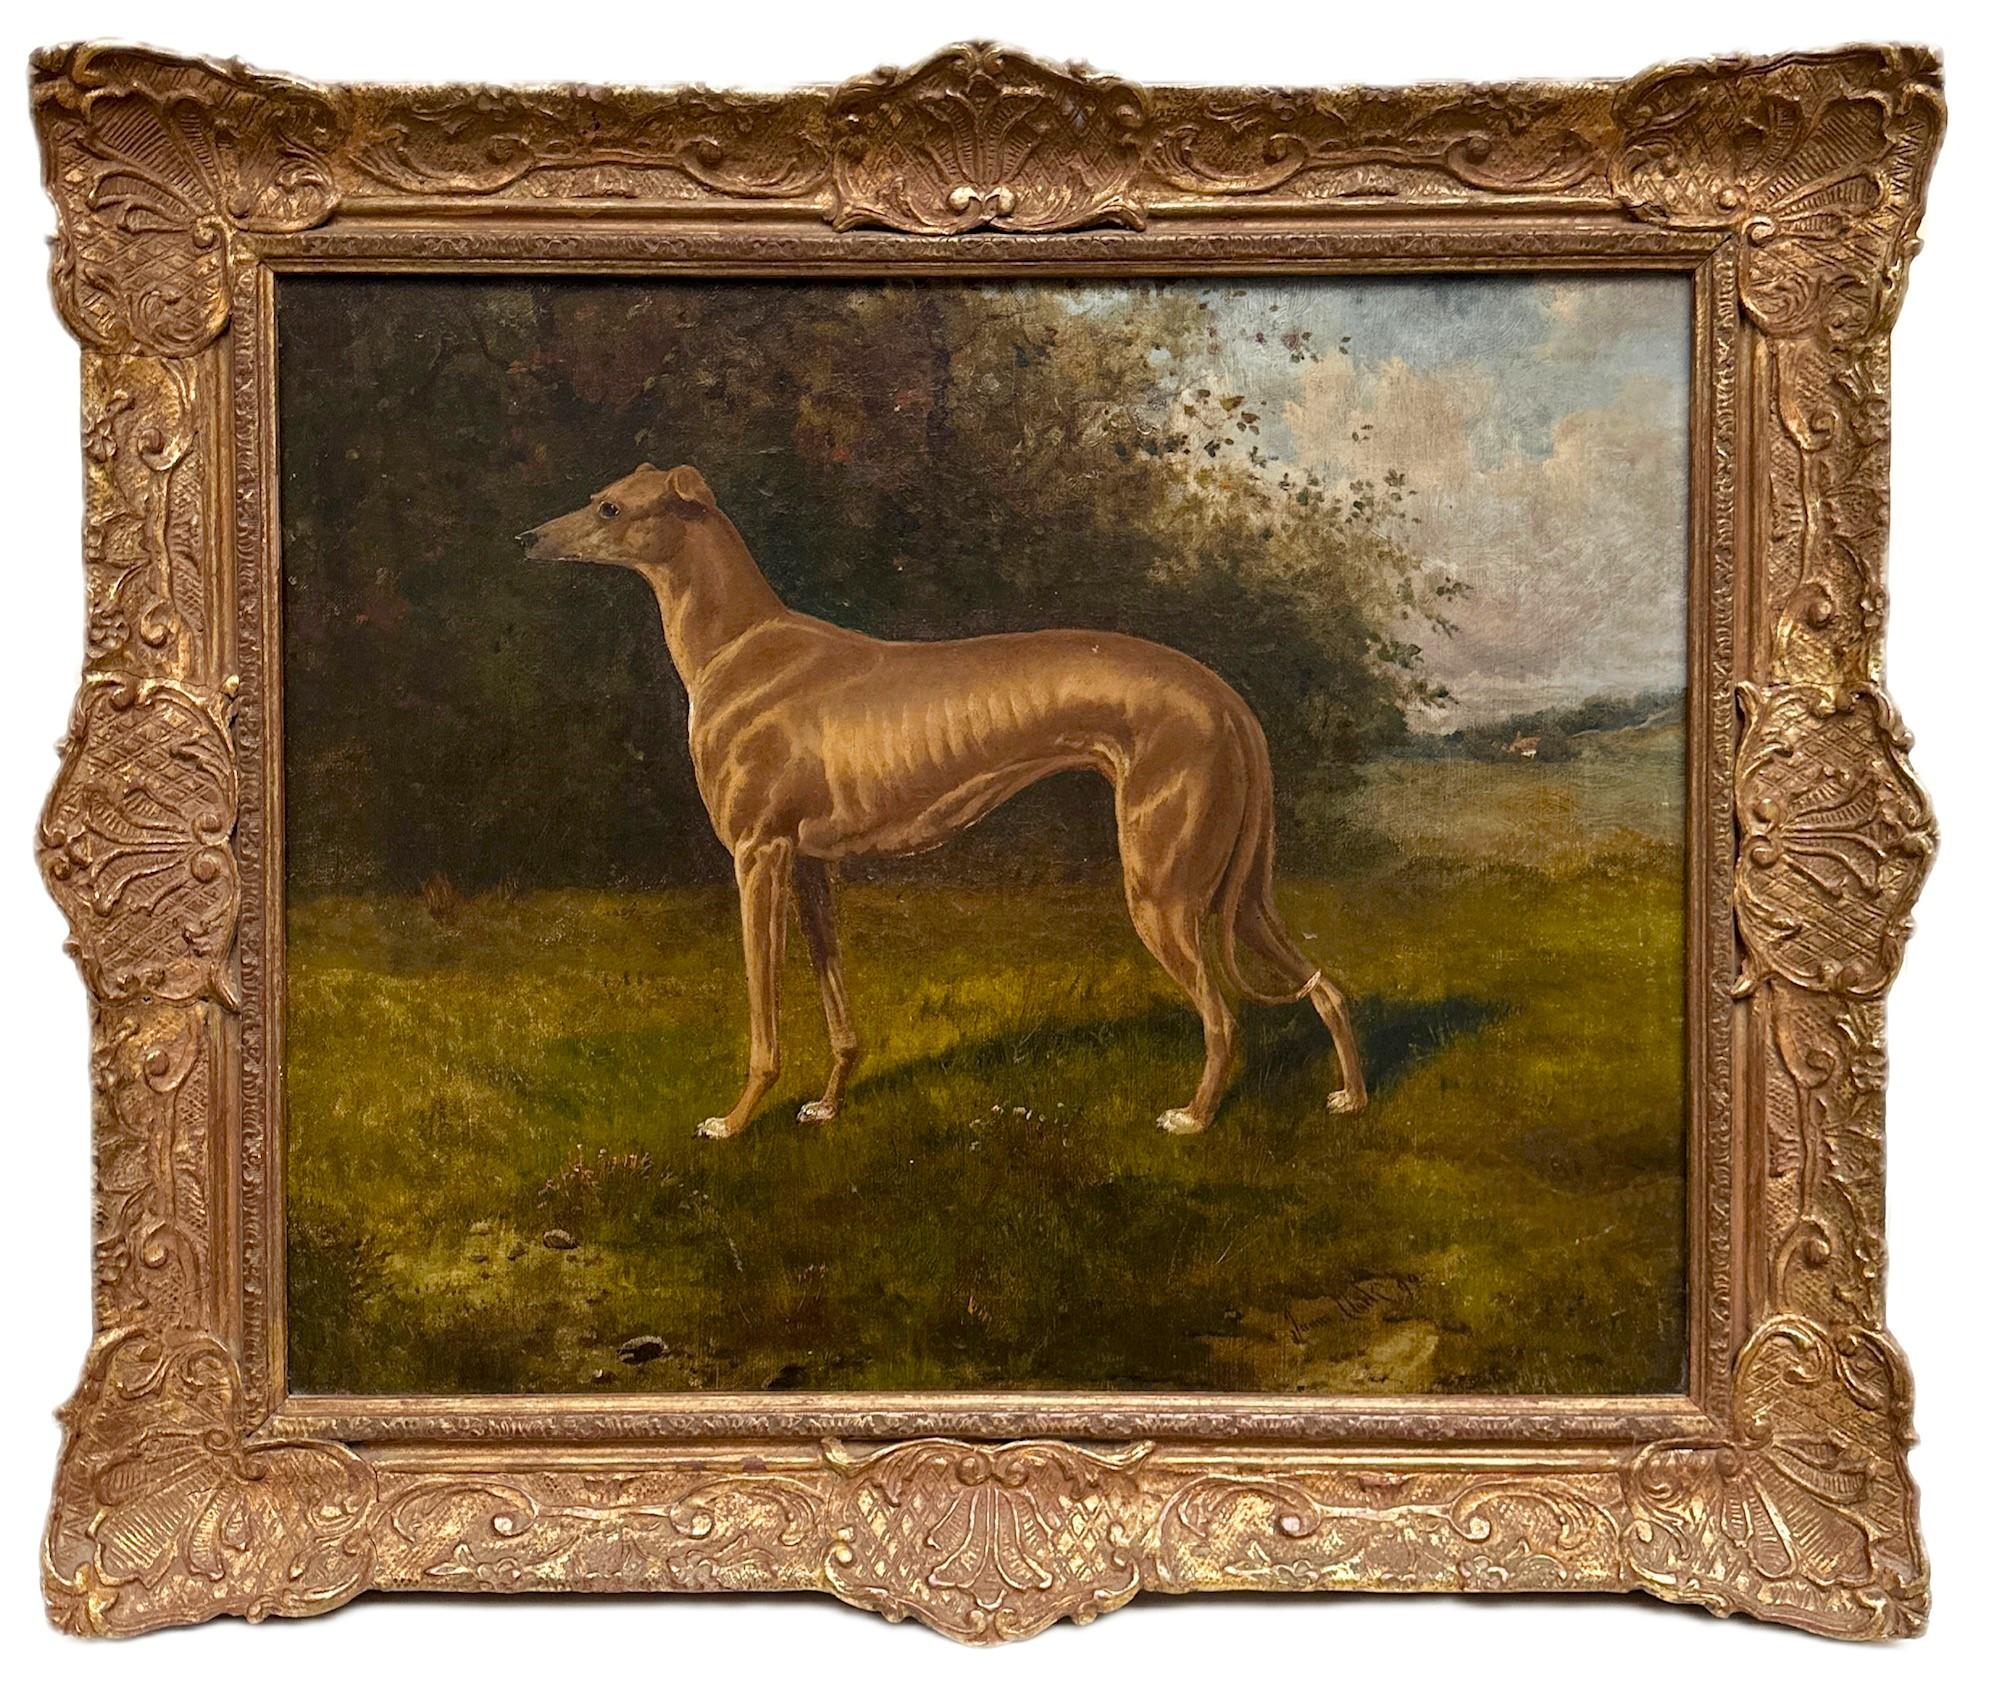 Un portrait d'un chien lévrier dans un paysage verdoyant du 19e siècle, signé